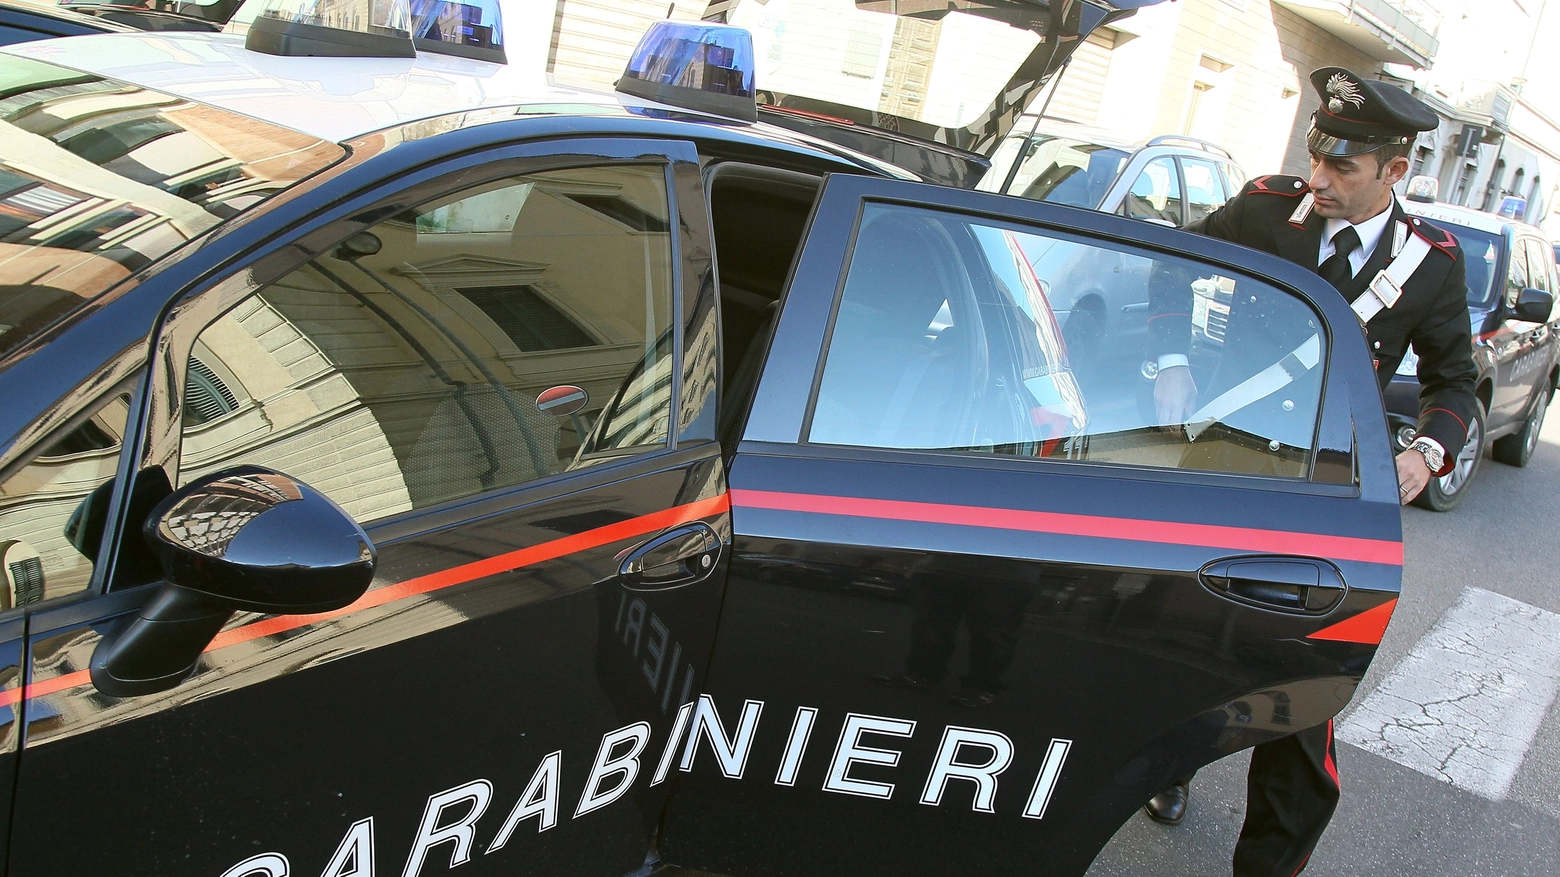 I carabinieri in azione